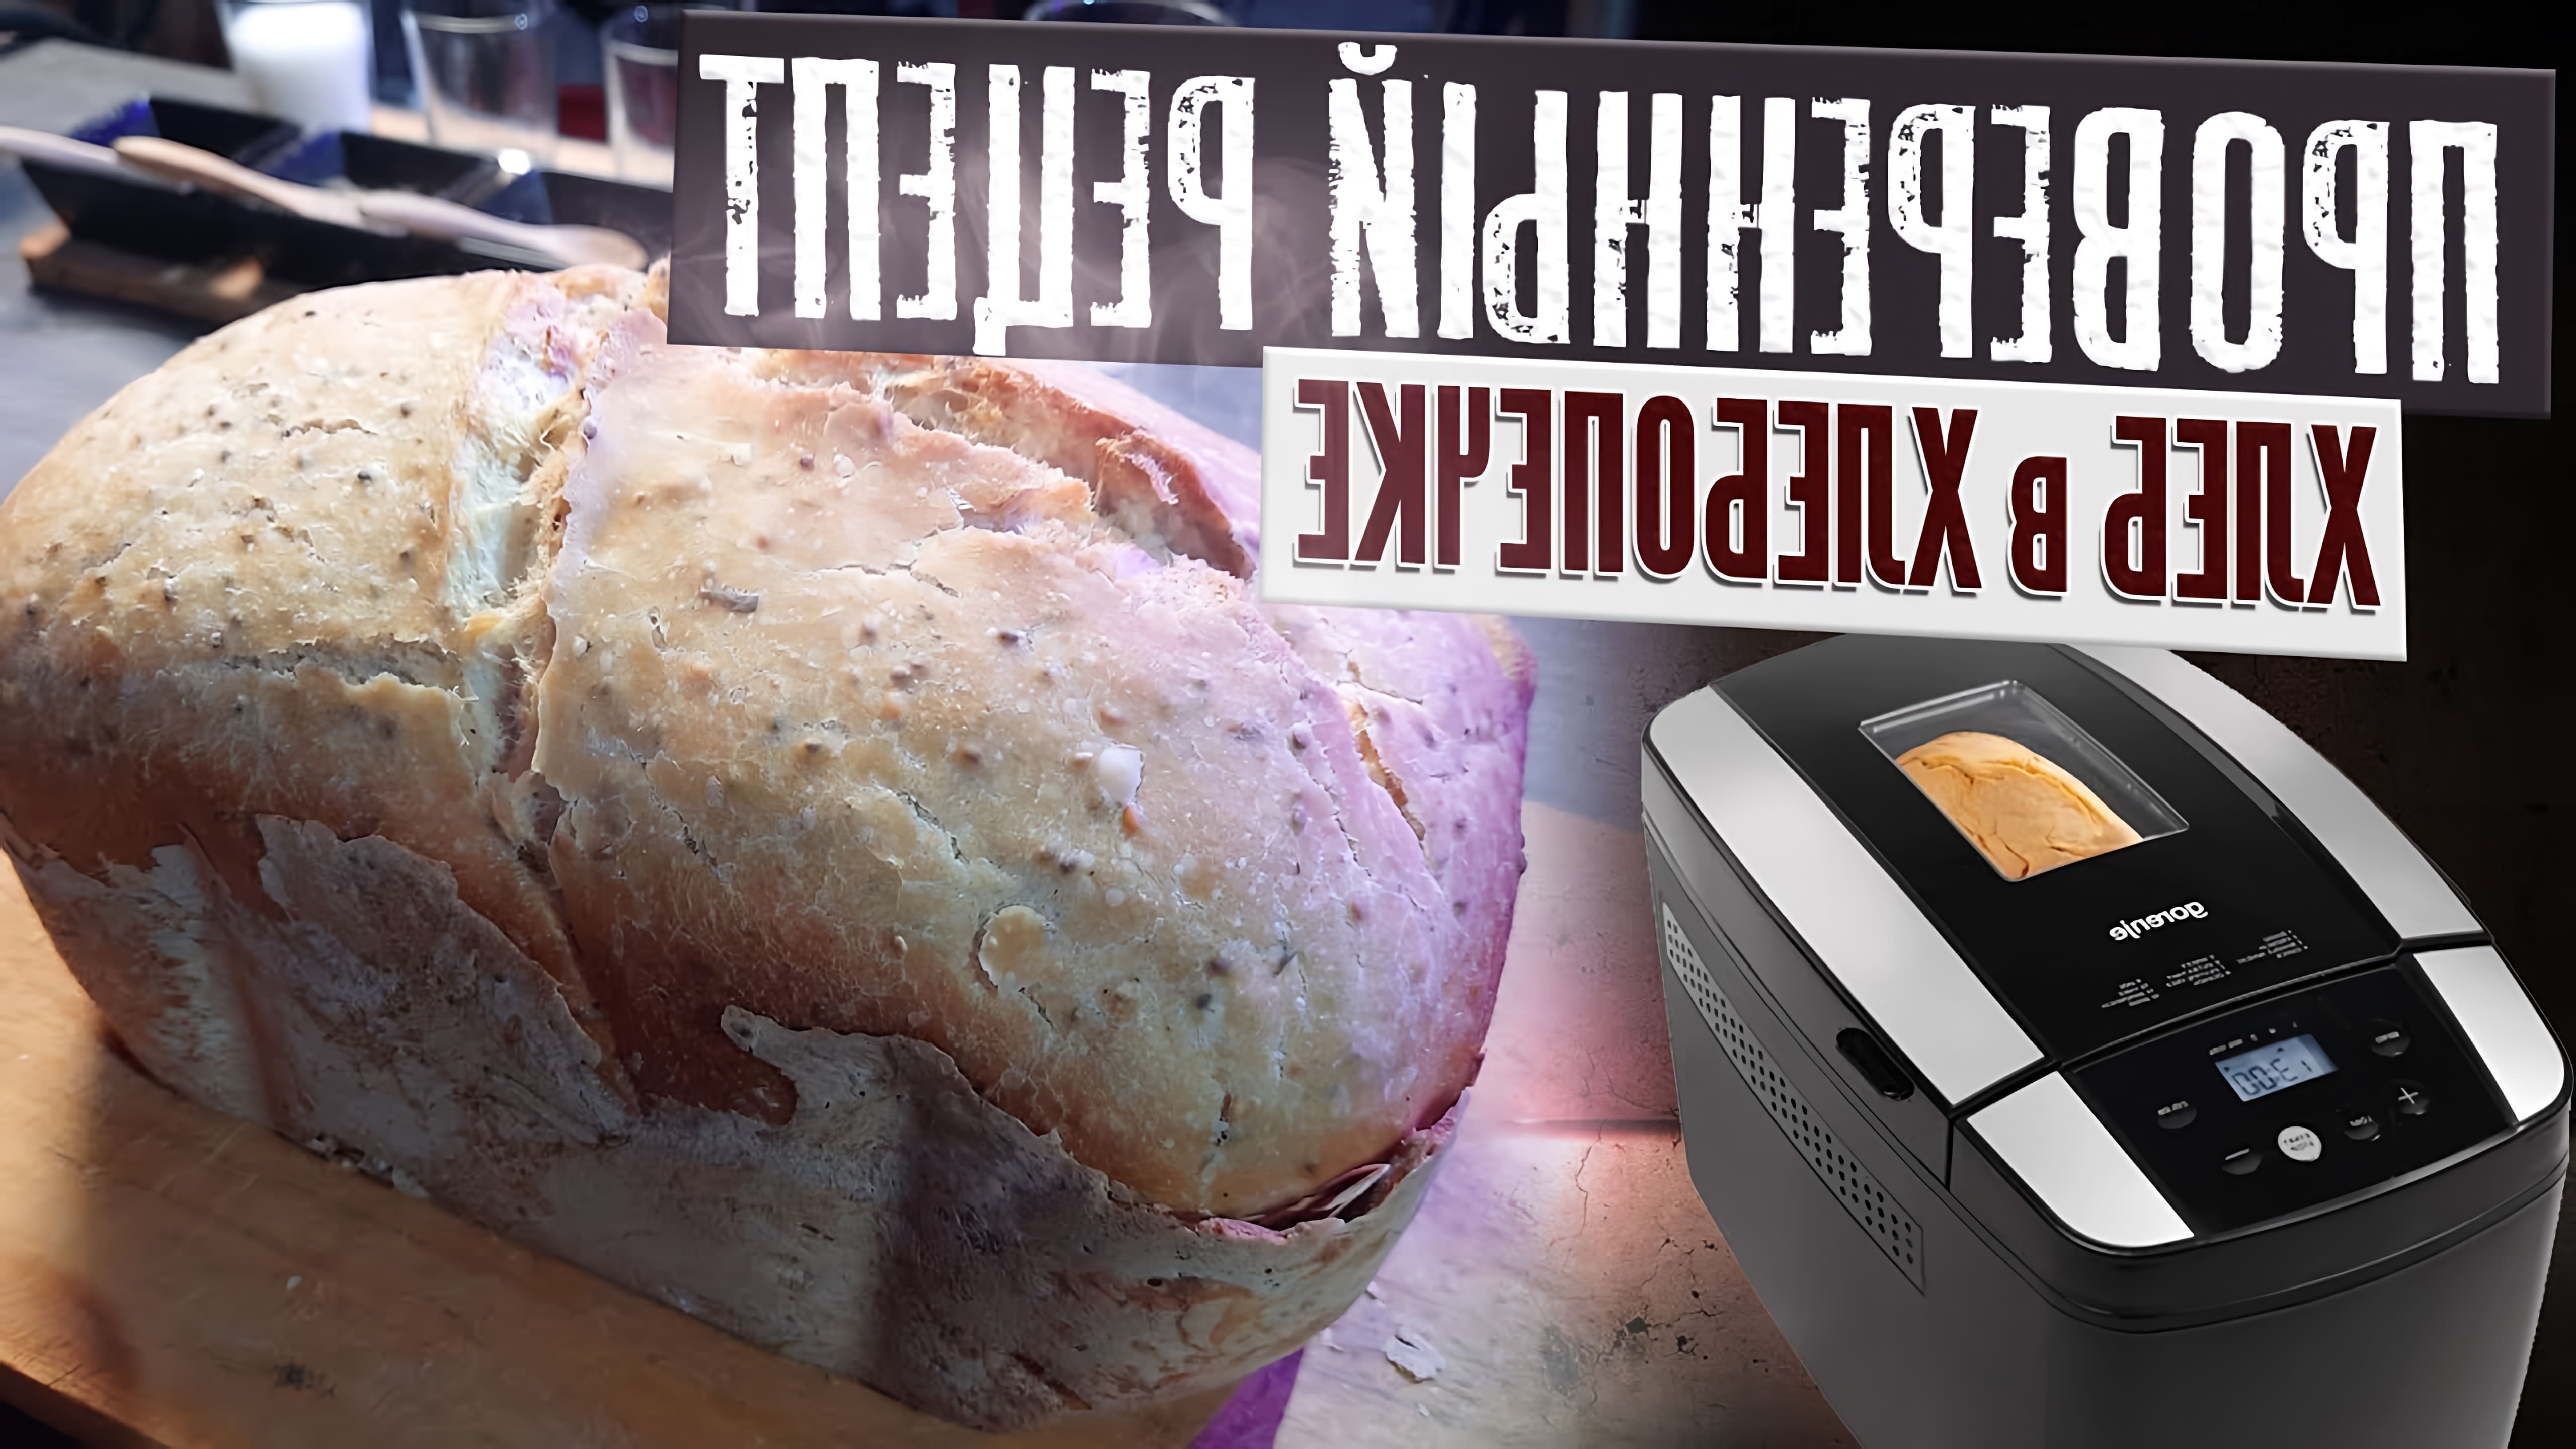 Рецепт хлеба в хлебопечке gorenje. Как испечь хлеб в хлебопечке, чтобы он был вкусным и с хрустящей корочкой. Печем... 